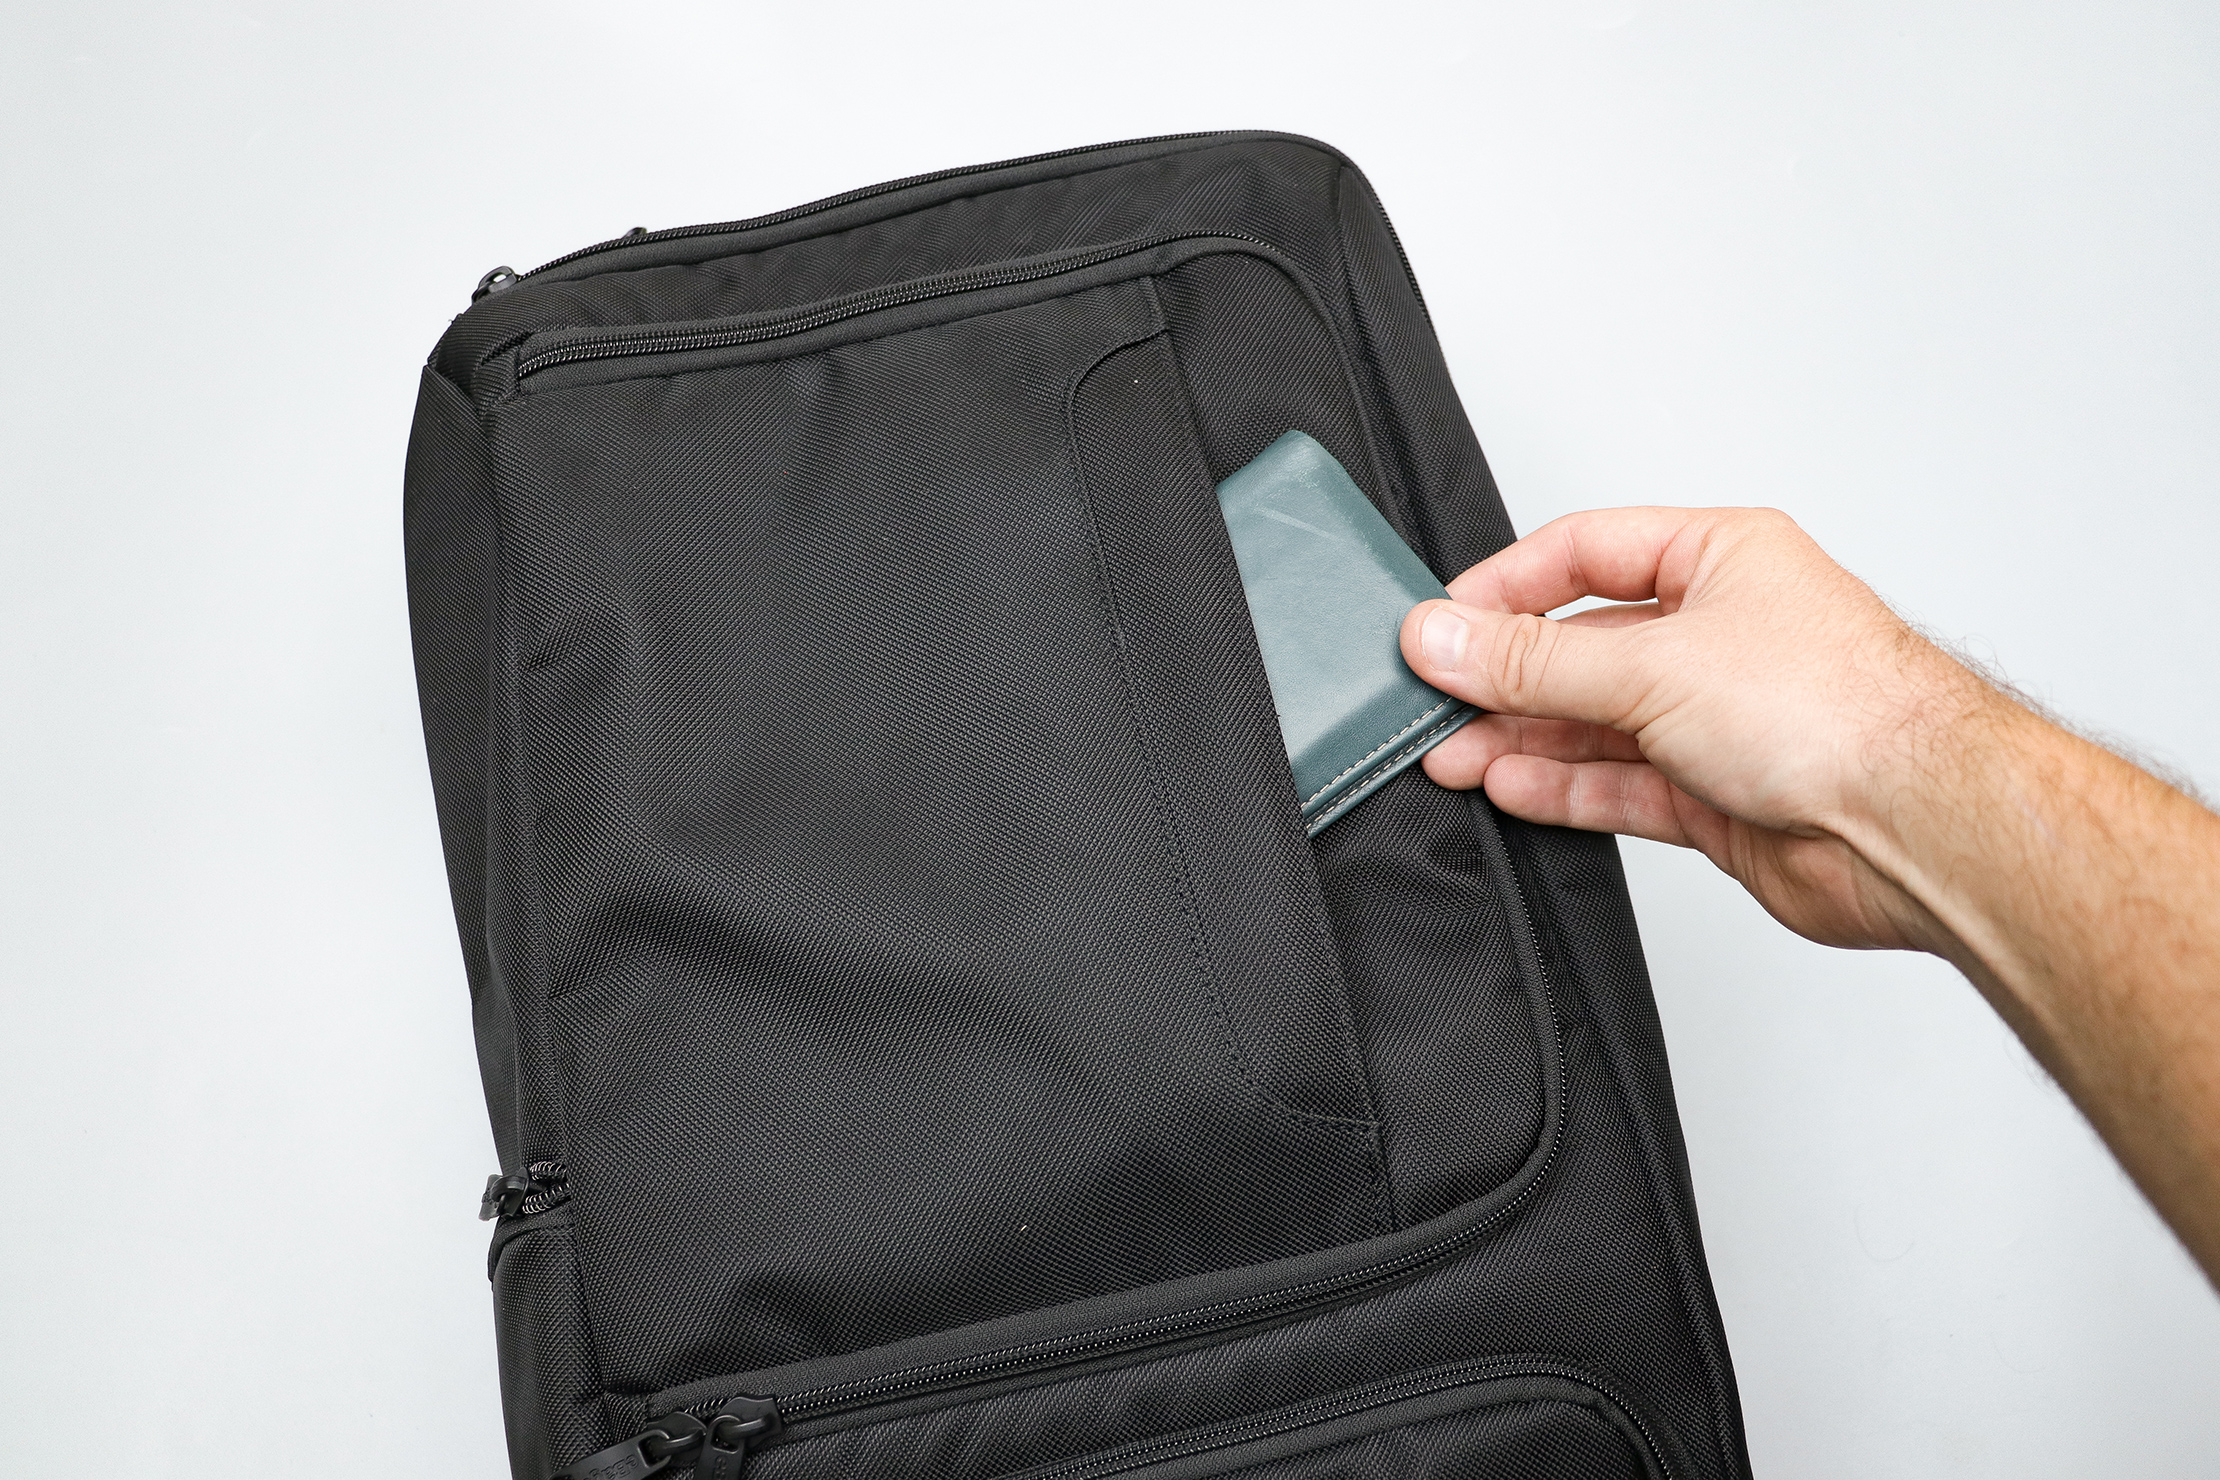 eBags Pro Slim Laptop Backpack Front Pocket